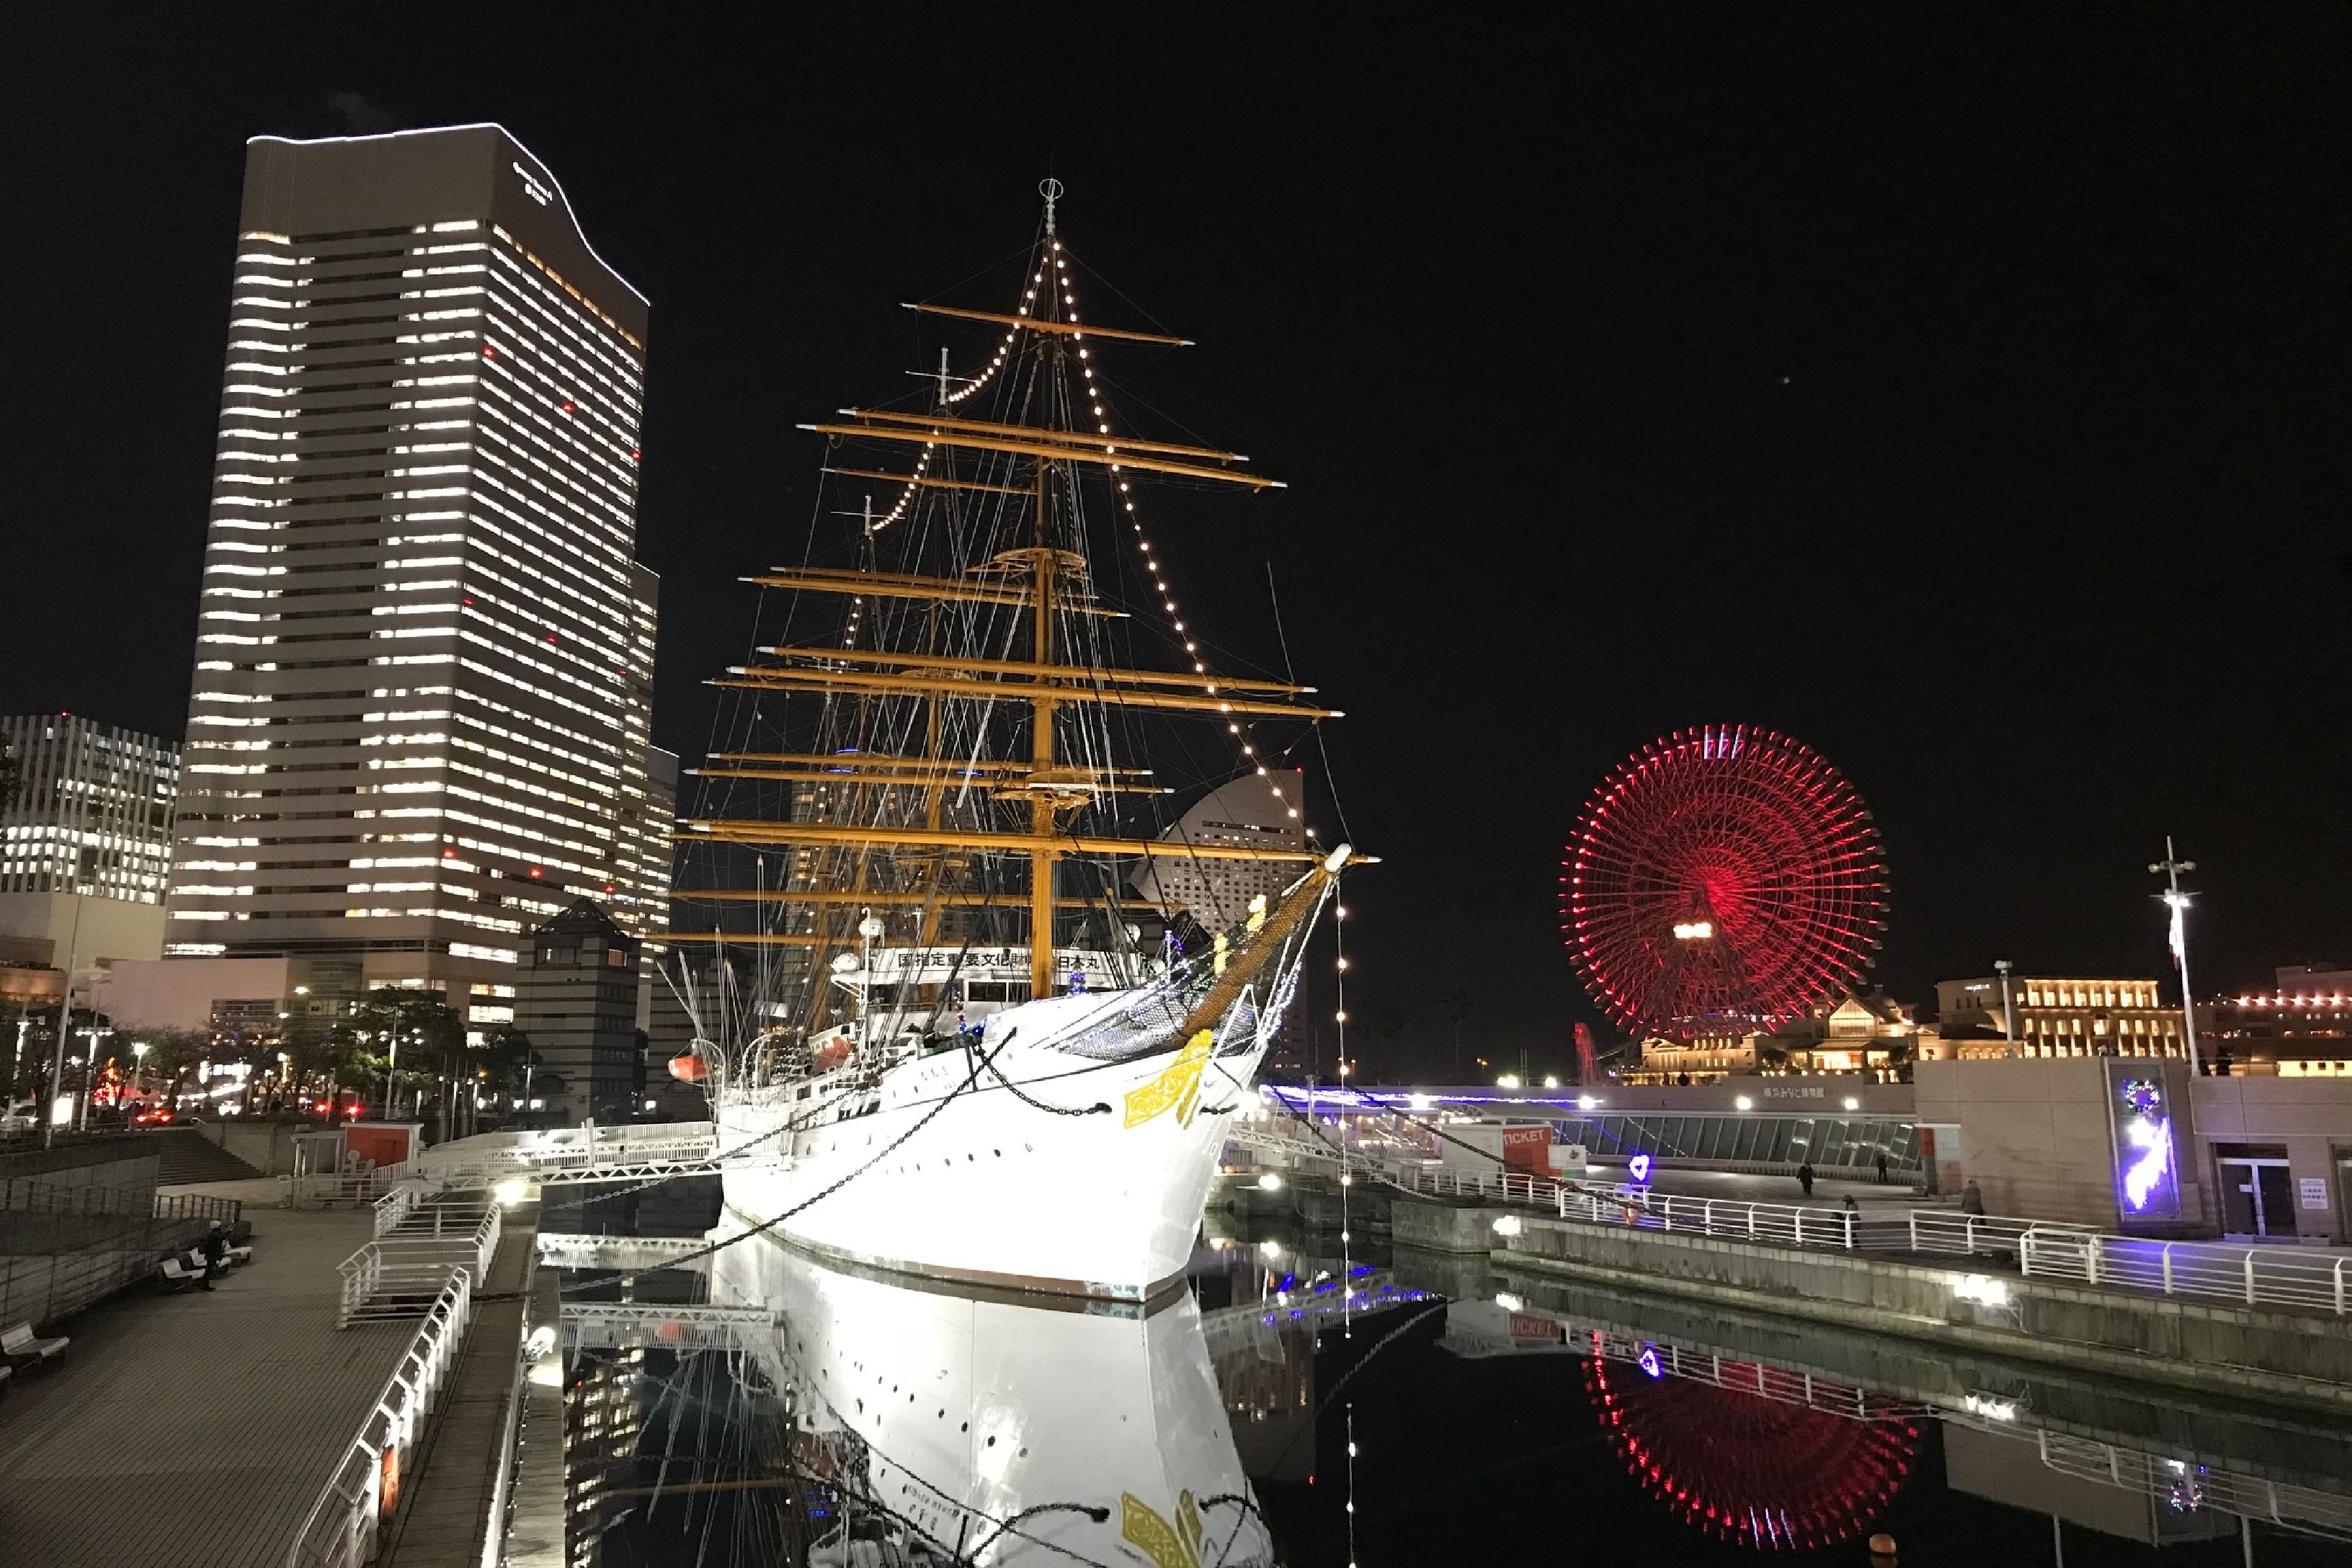 帆船日本丸 帆船日本丸 横浜みなと博物館